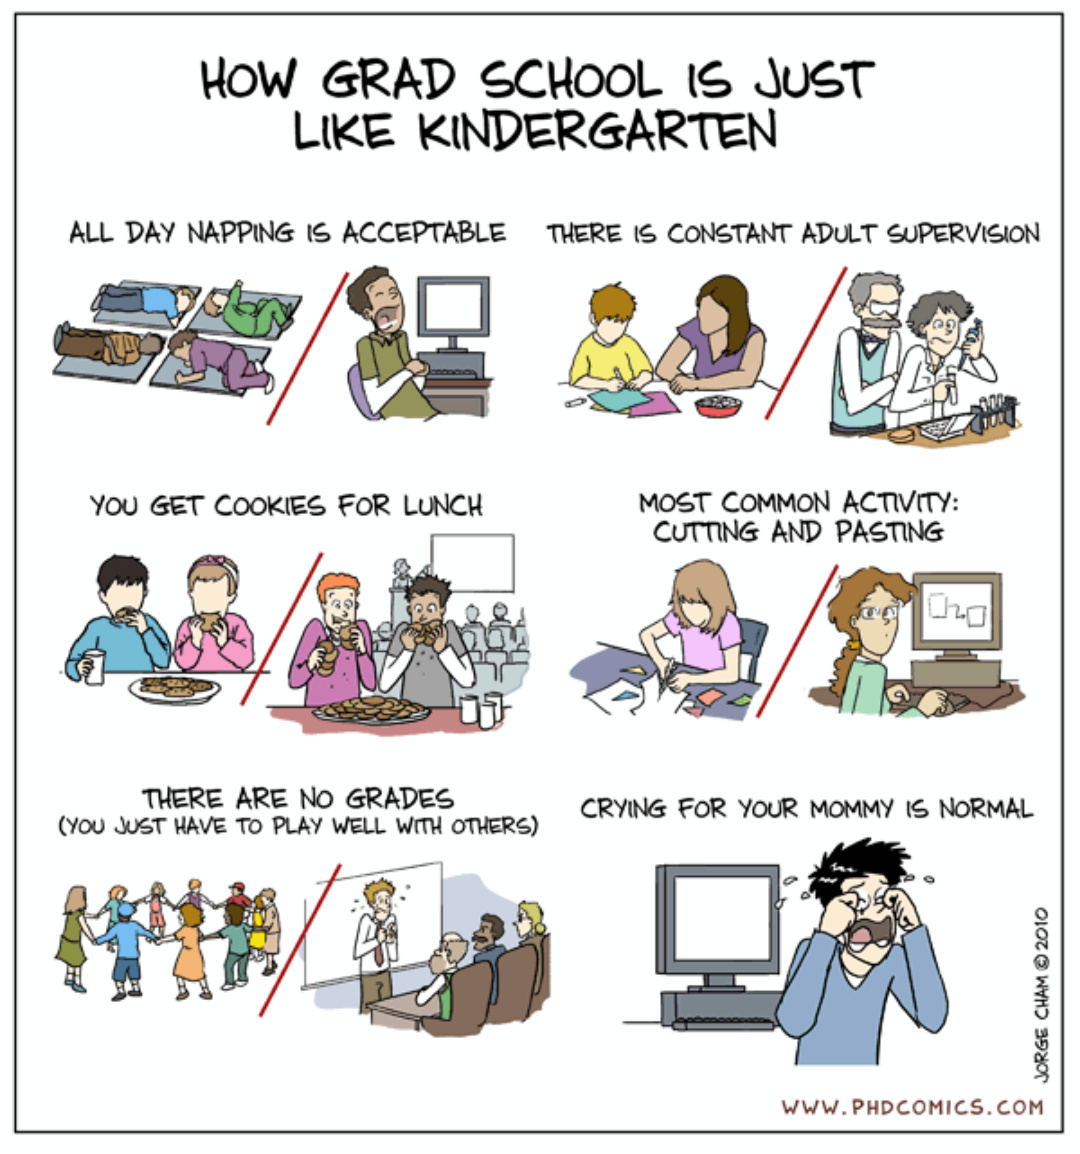 Kindergarten vs Grad school - meme